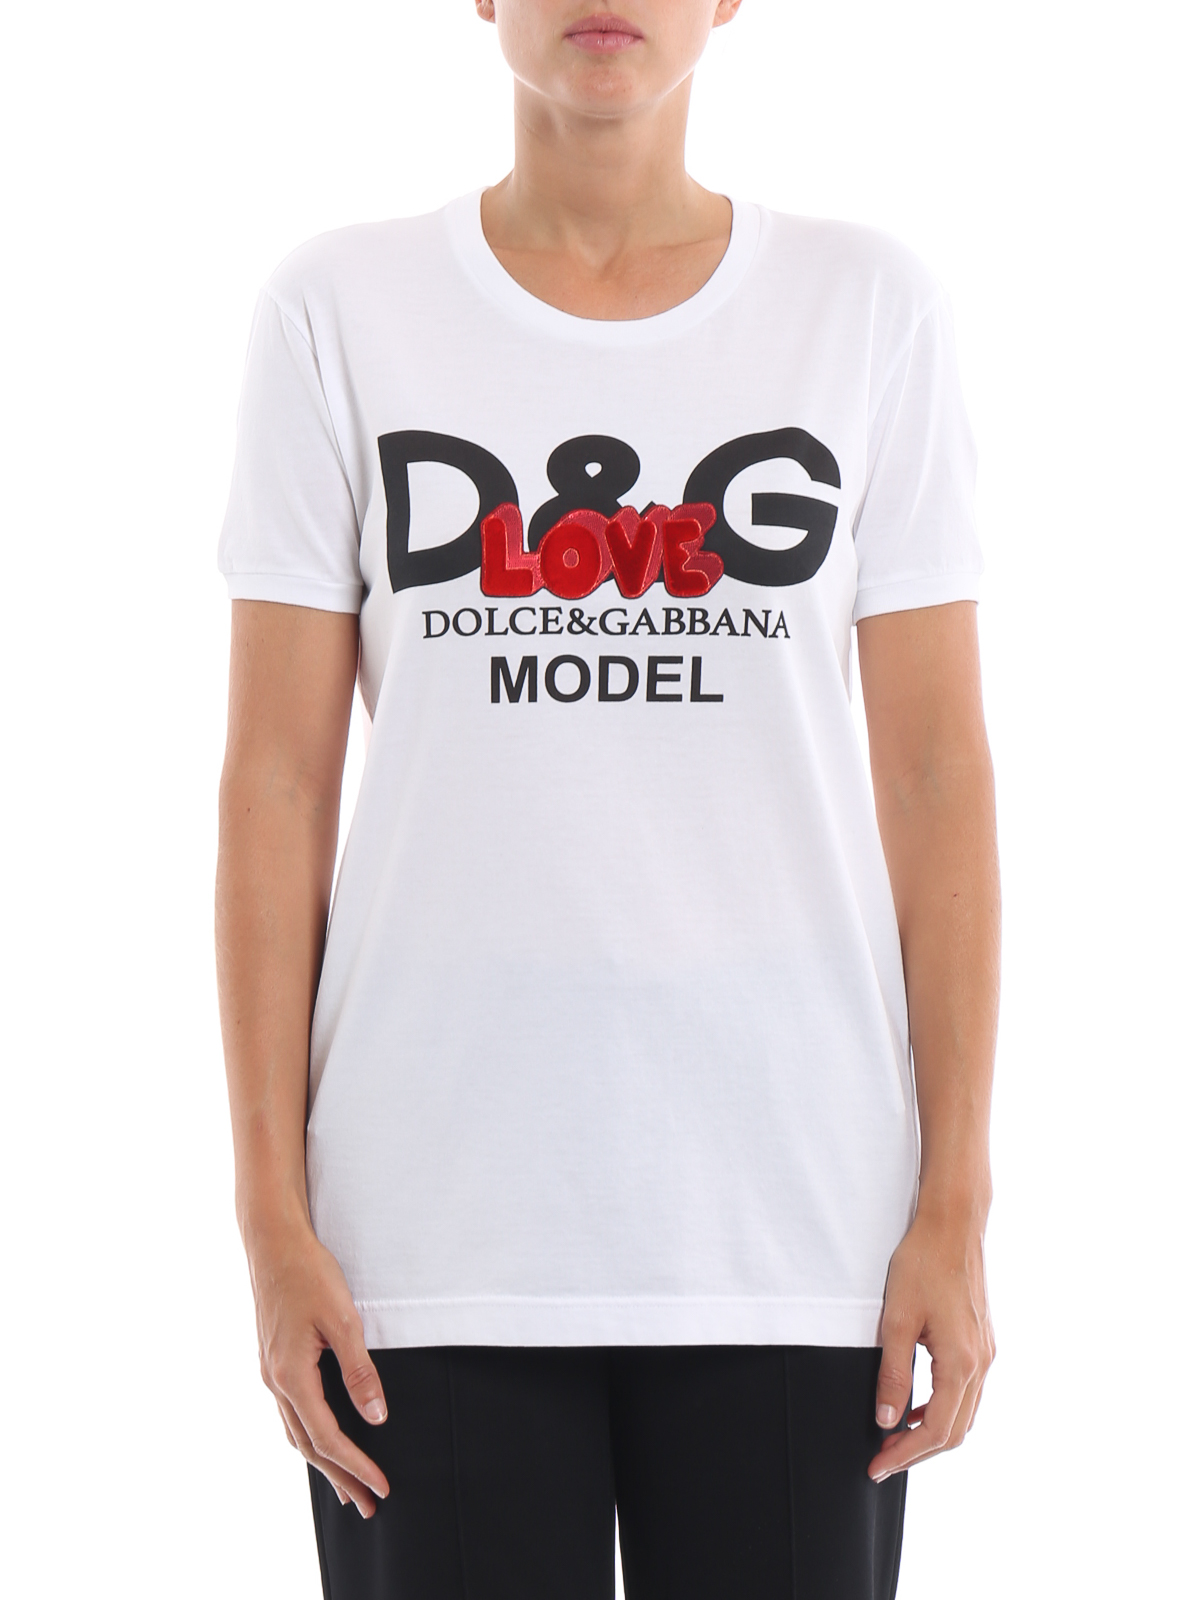 Tシャツ Dolce Gabbana Tシャツ D G Model Love F8k74zfh73xhwt70